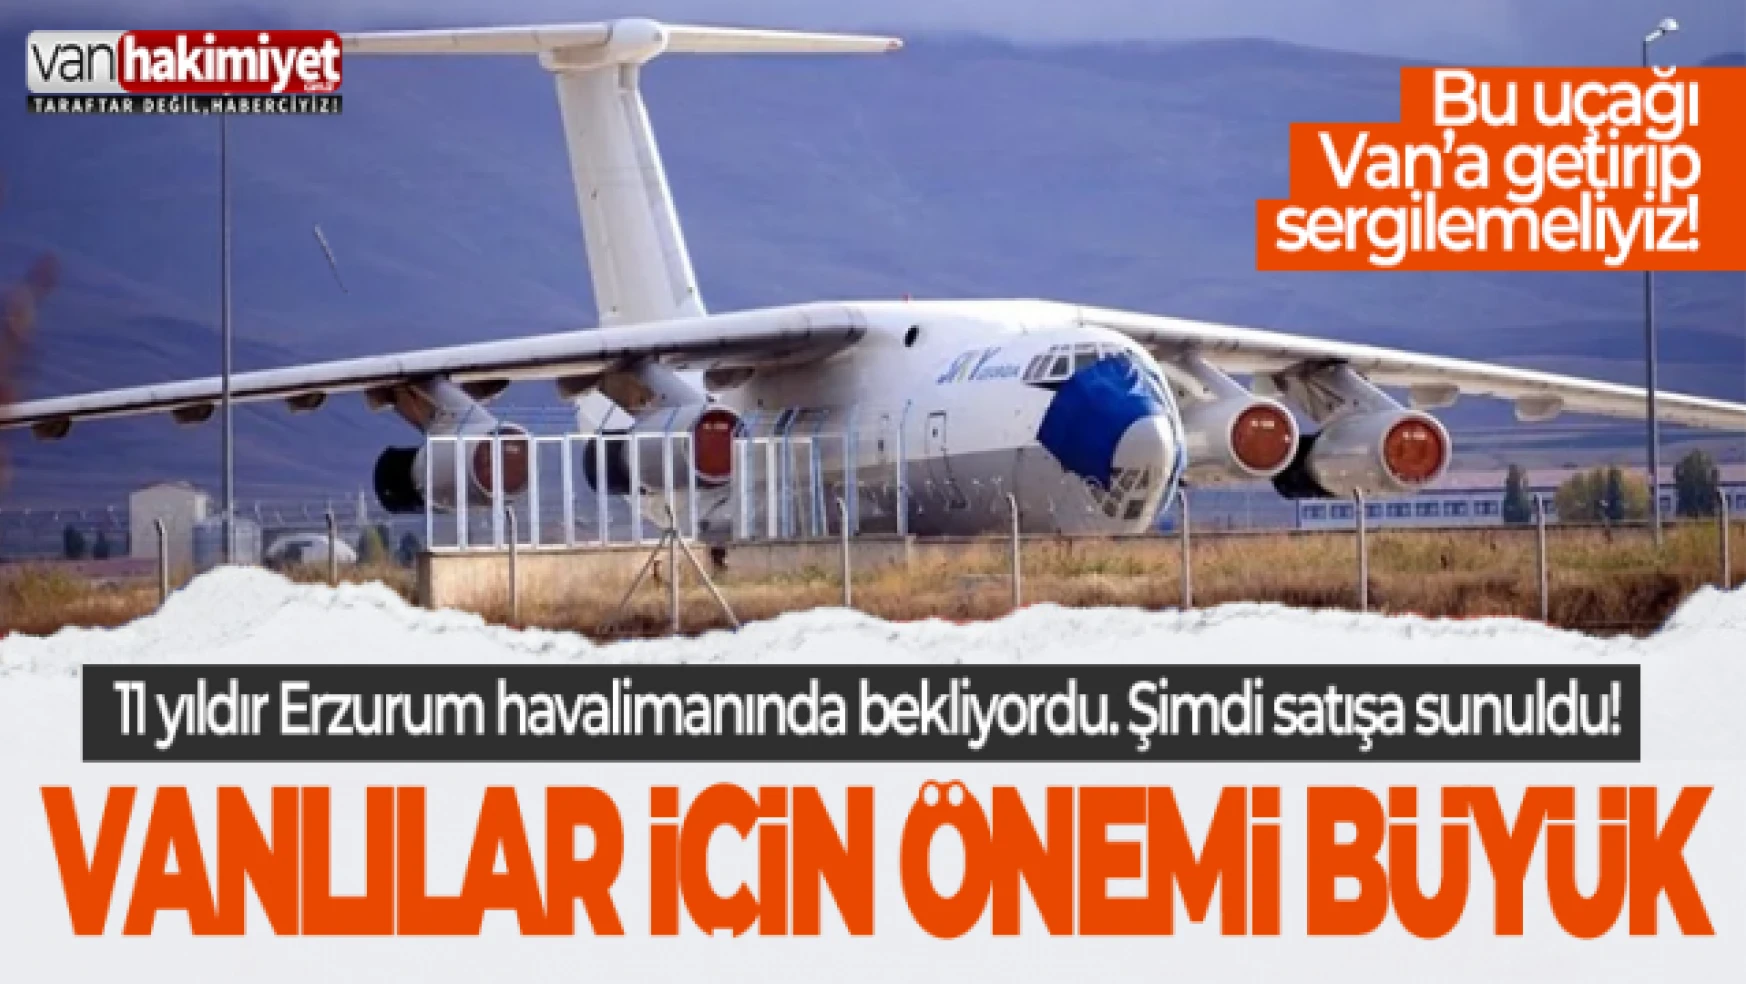 11 yıldır Erzurum'da bekleyen uçak ikinci el araba fiyatına satışa çıkıyor